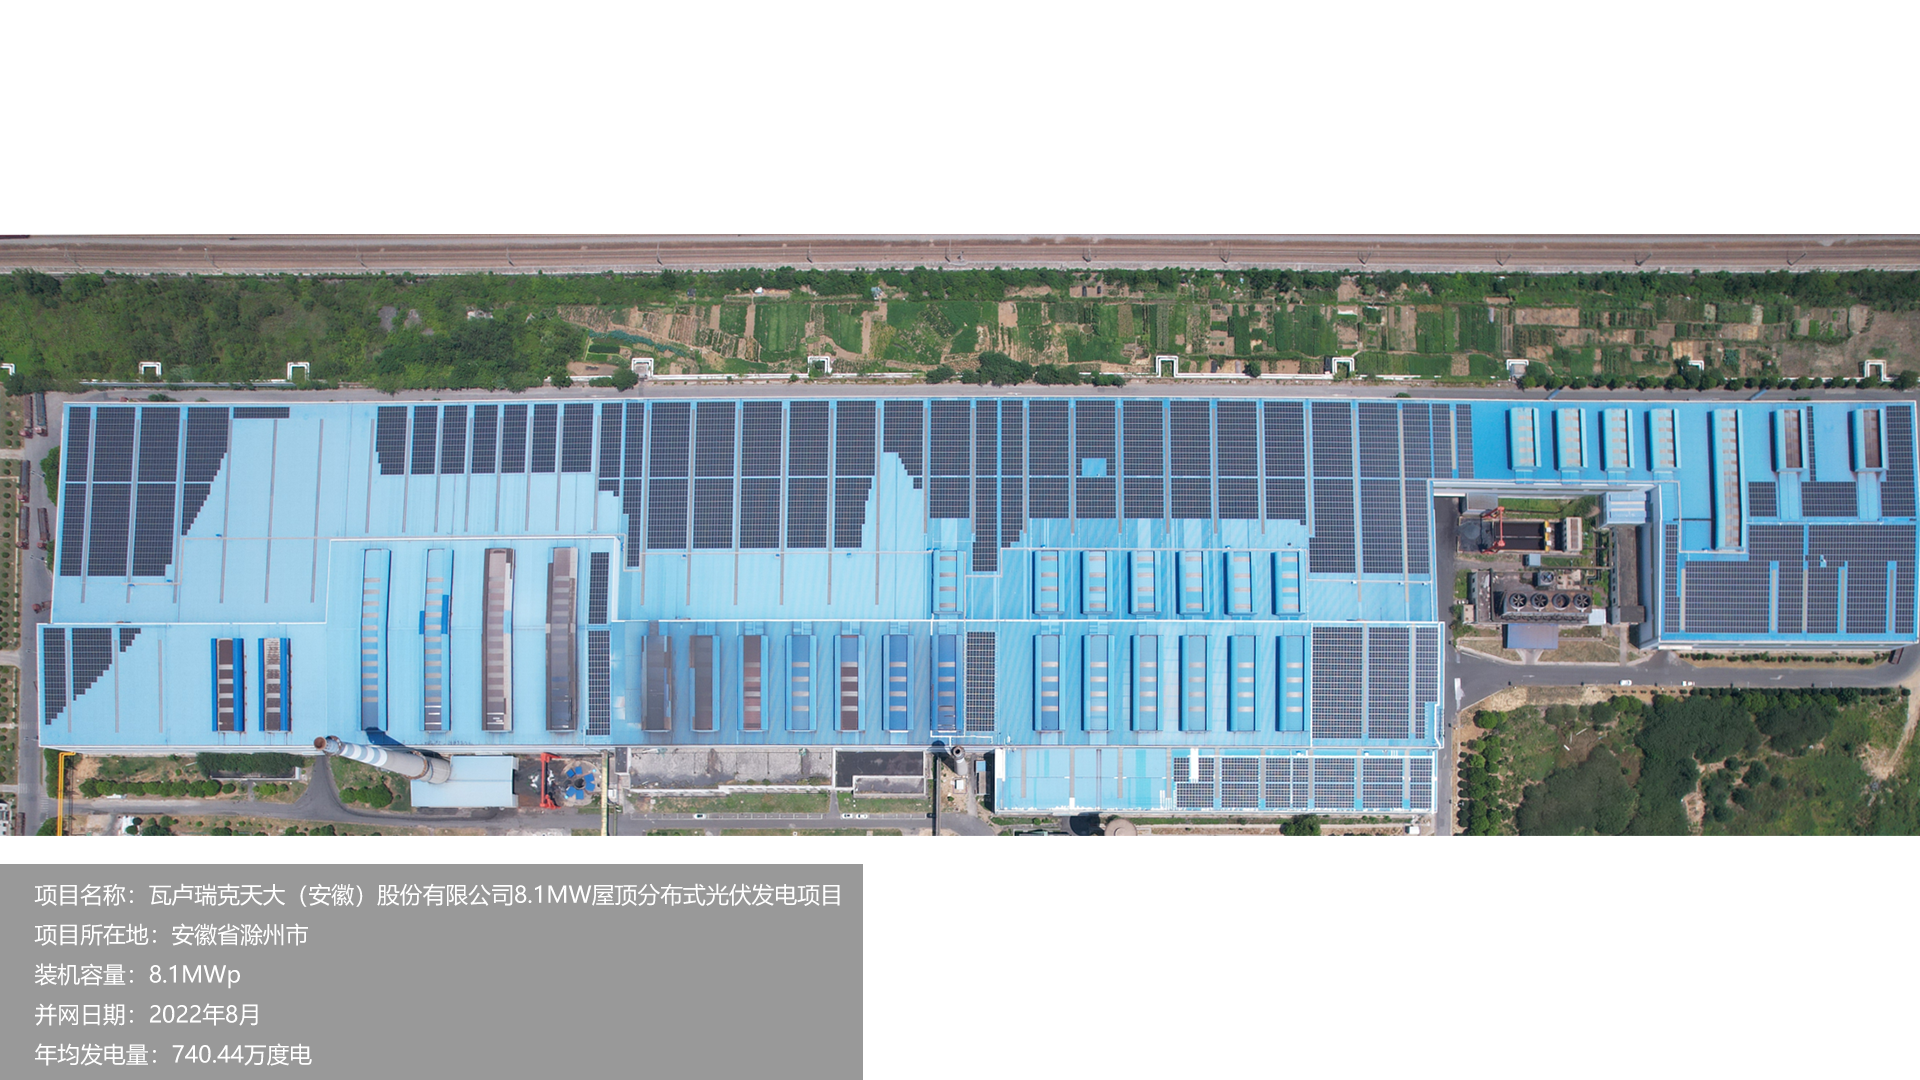 瓦卢瑞克项目总装机容量8.1MW，项目位于安徽省滁州市，于2022年8月并网发电，年均发电量约740万度。